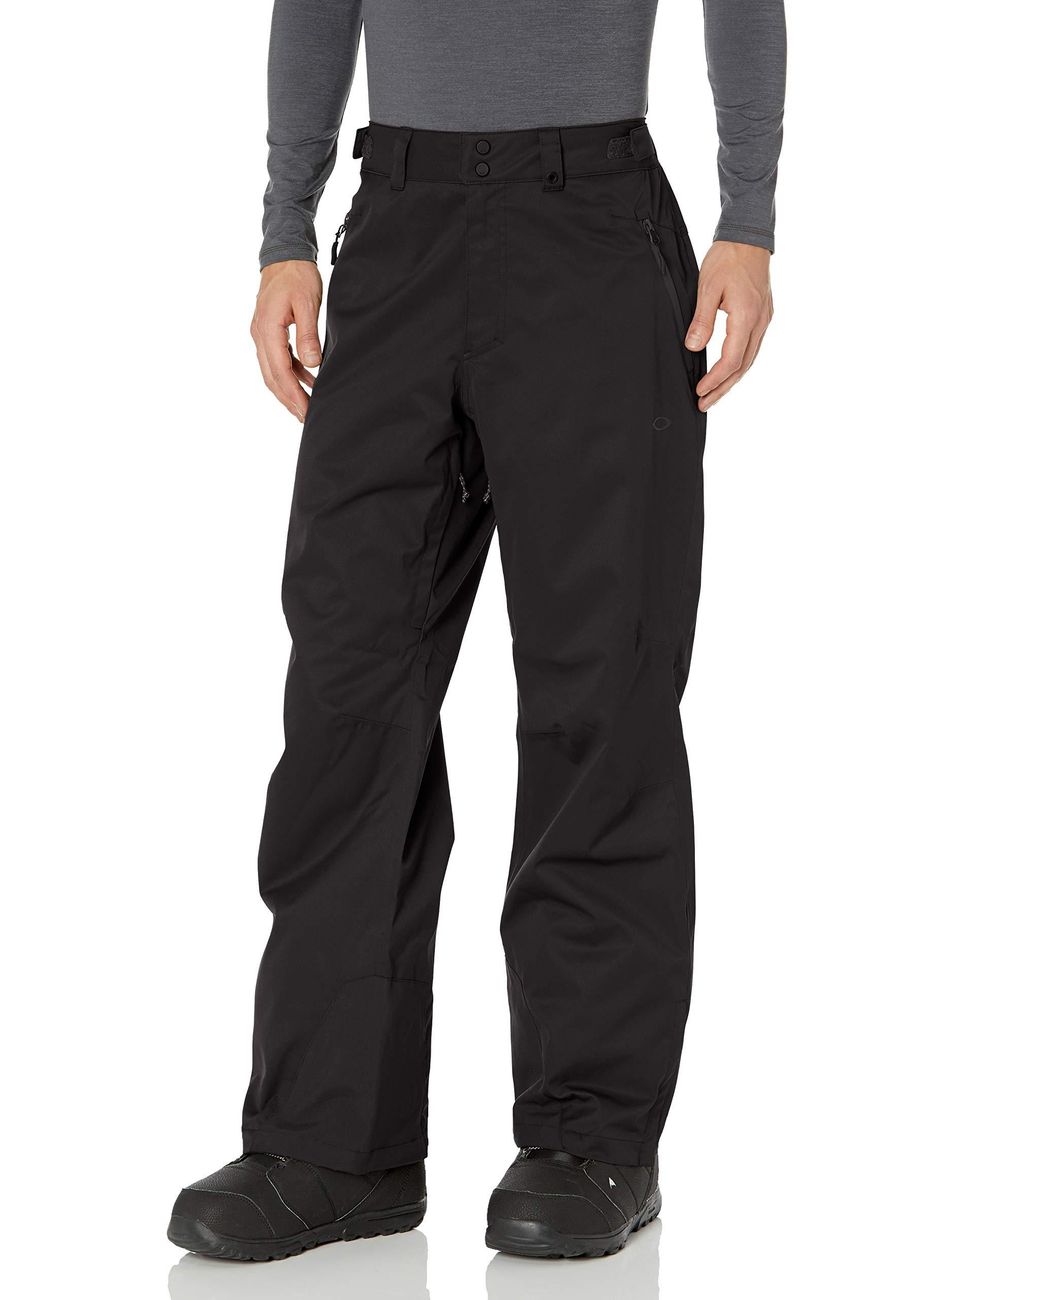 Oakley Crescent 2.0 Shell 2l 10k Pant in Black/Black (Black) for Men - Lyst